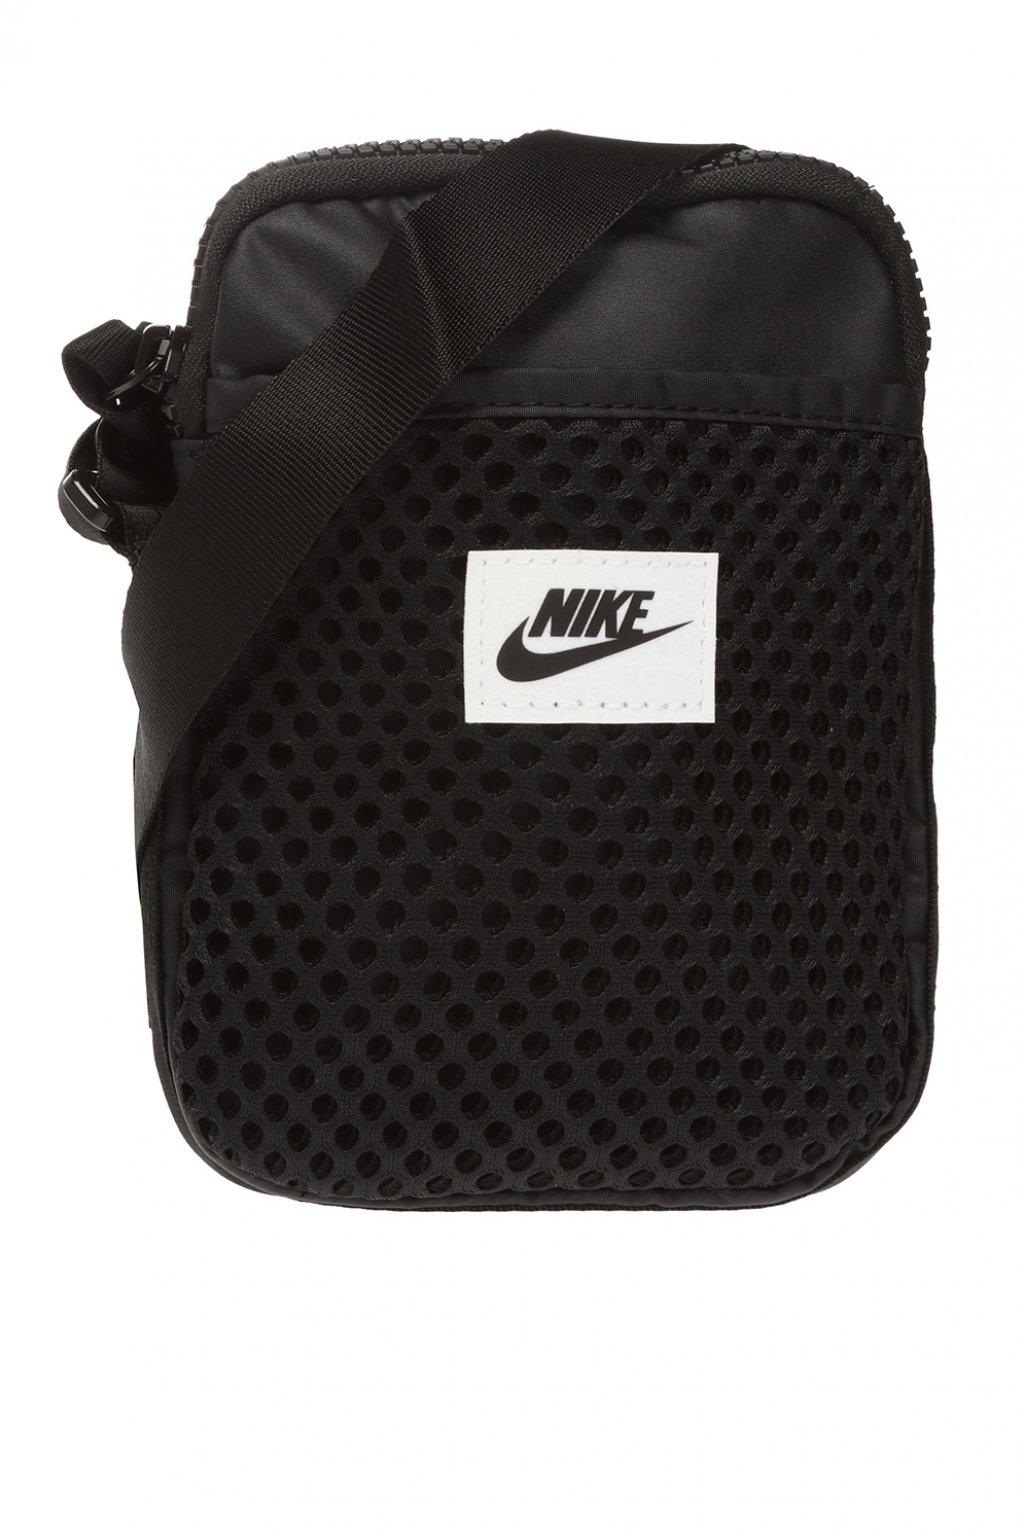 Nike Synthetic Patched Shoulder Bag Black for Men - Lyst